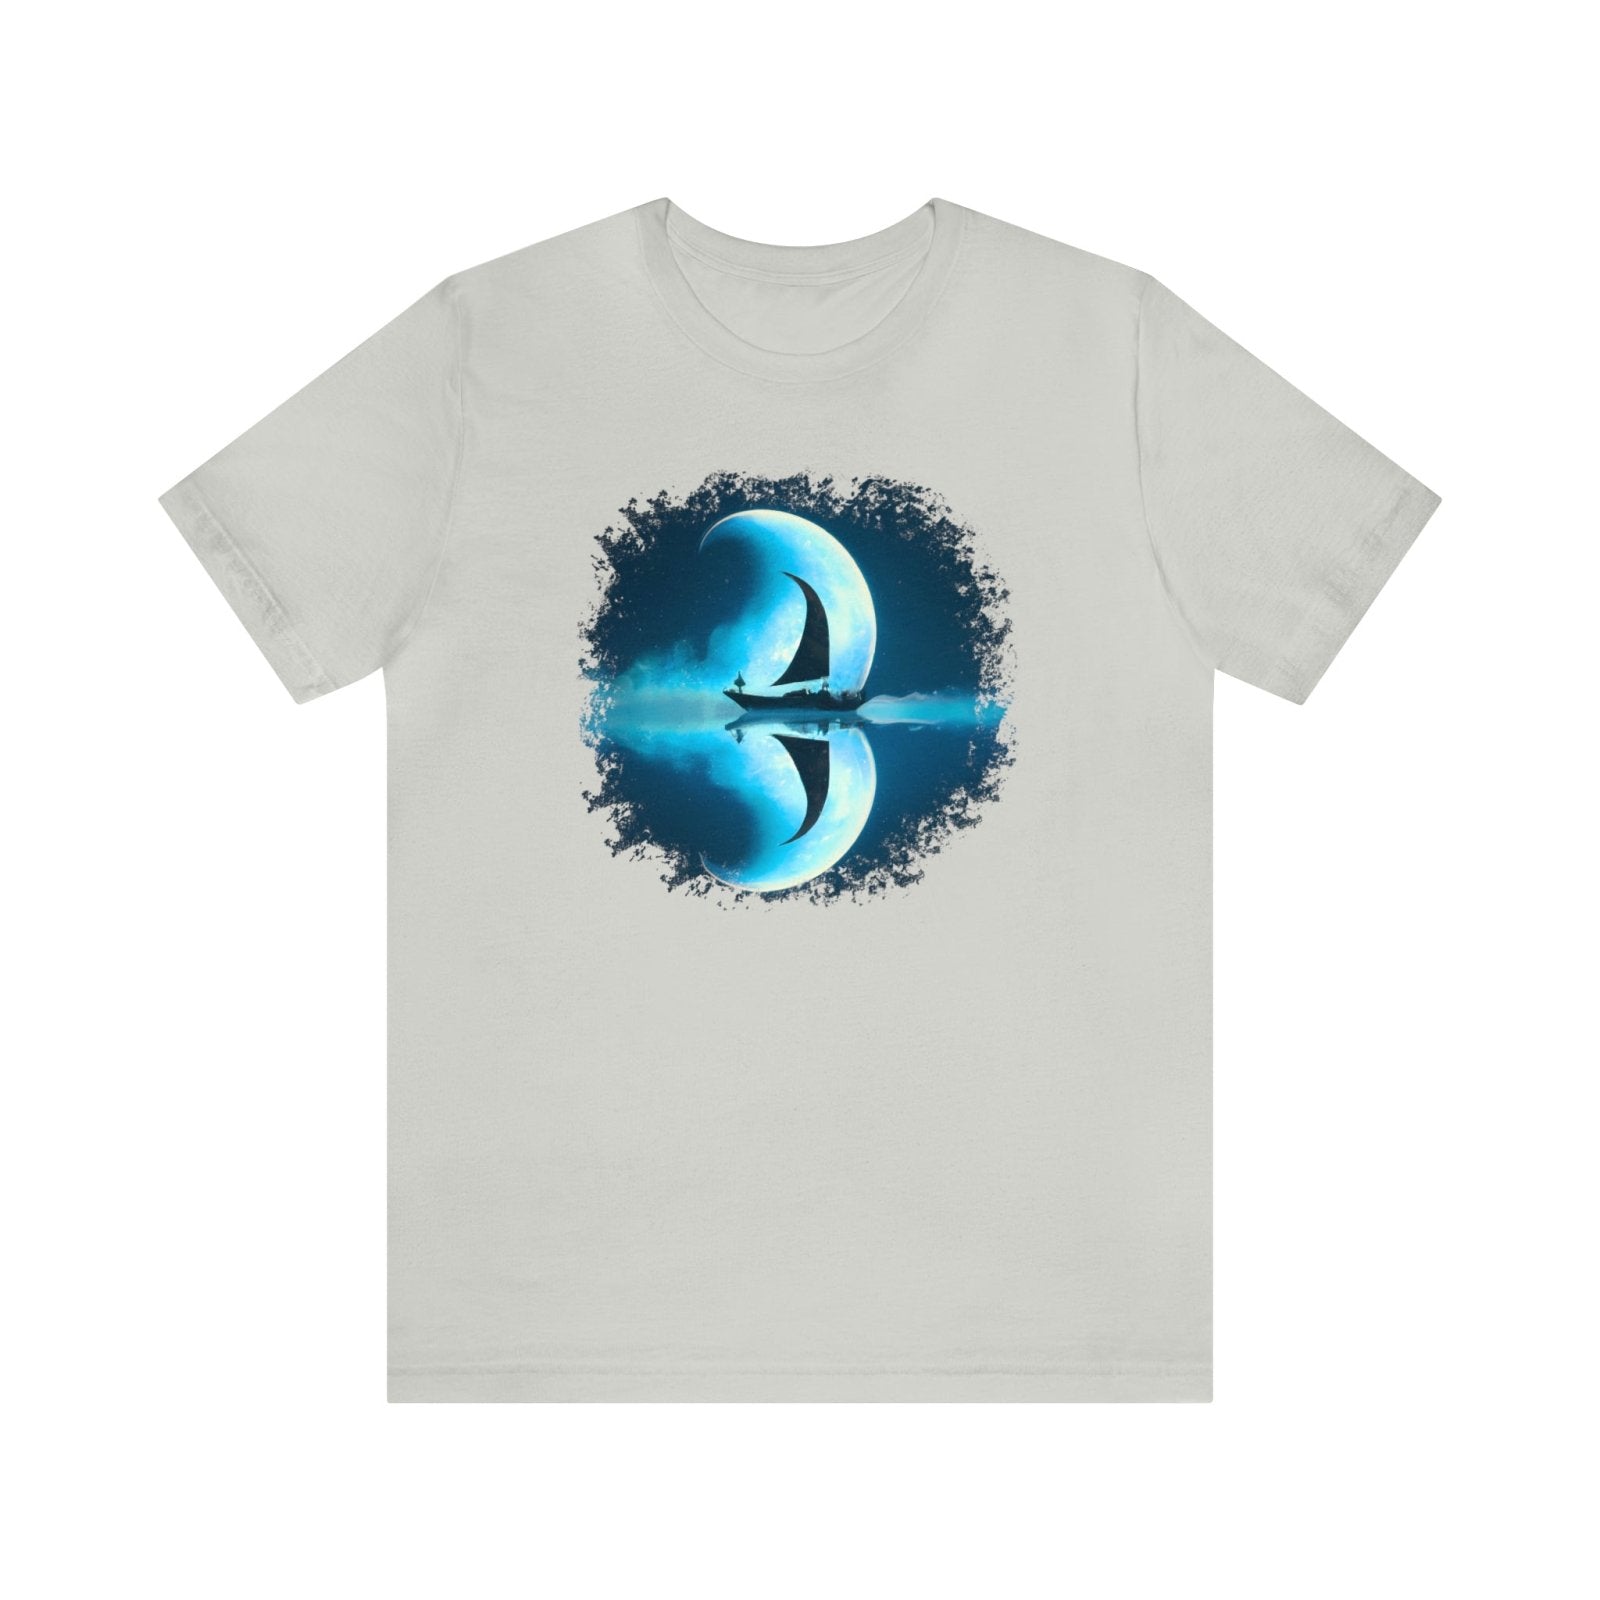 Sailing Through the Moon Unisex T-Shirt, sailboat art shirt, nautical apparel, Silver - Subtle Blue M